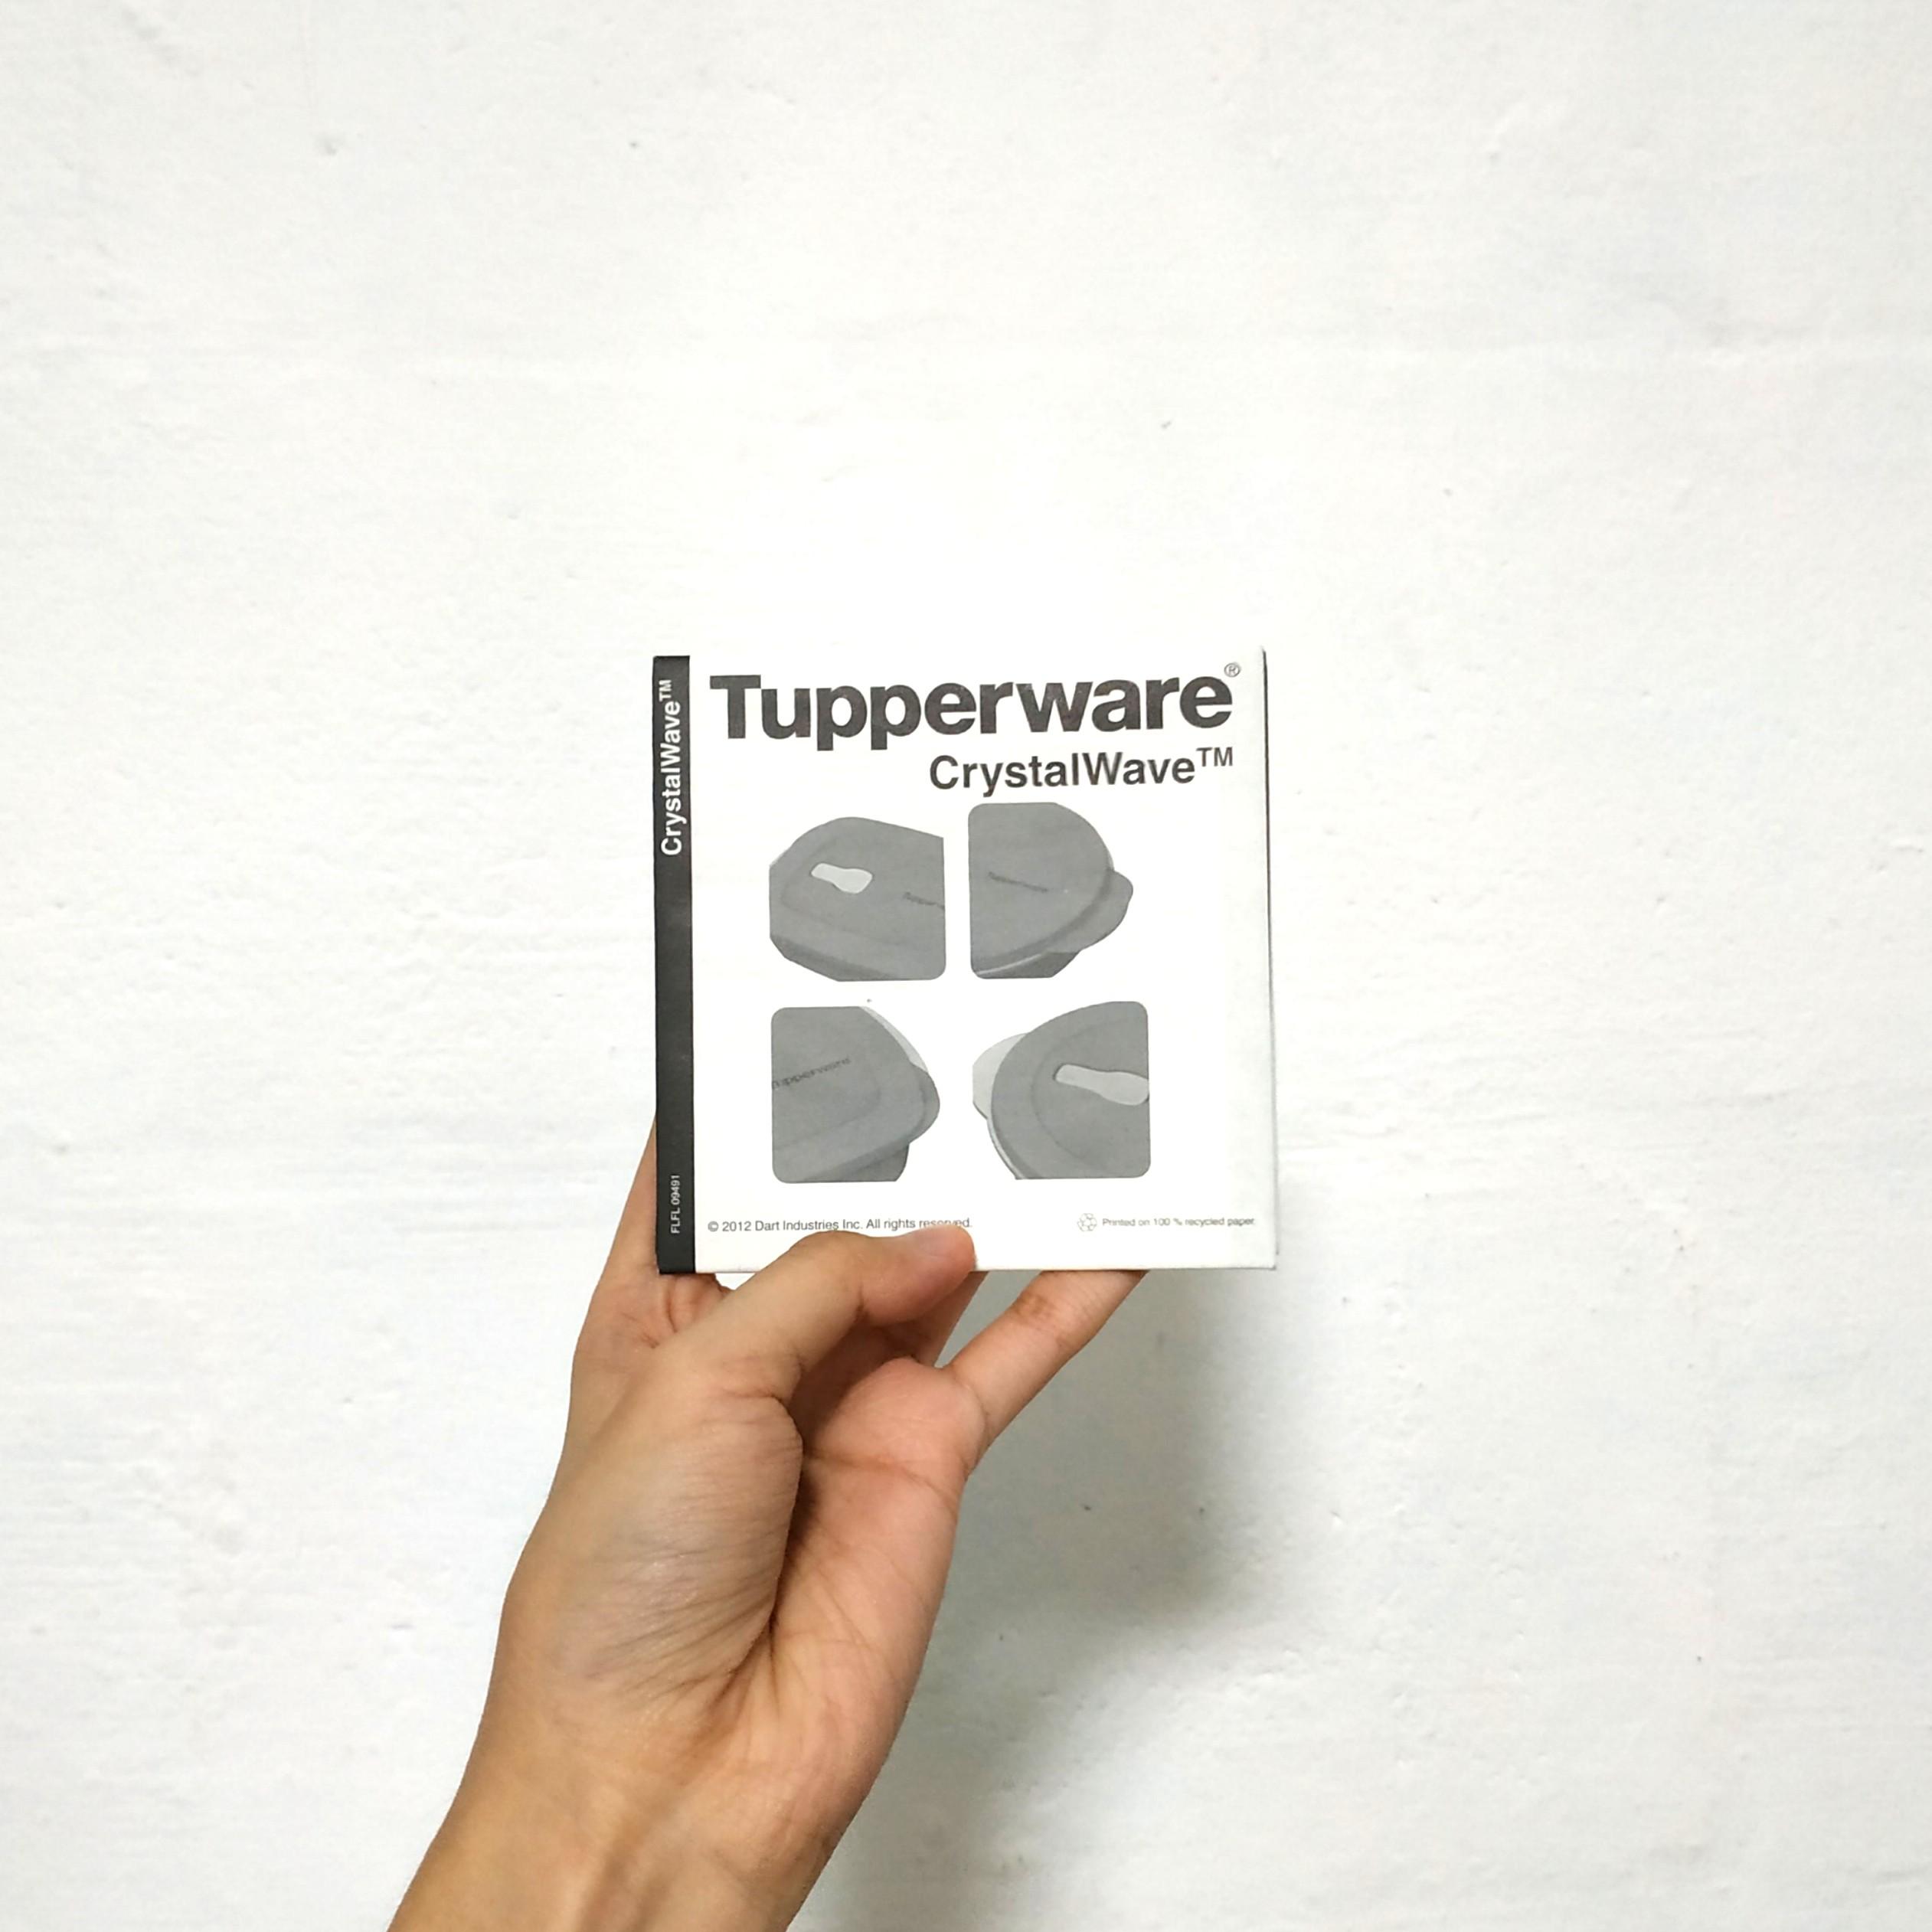 Microwave Safe – Tupperware Singapore